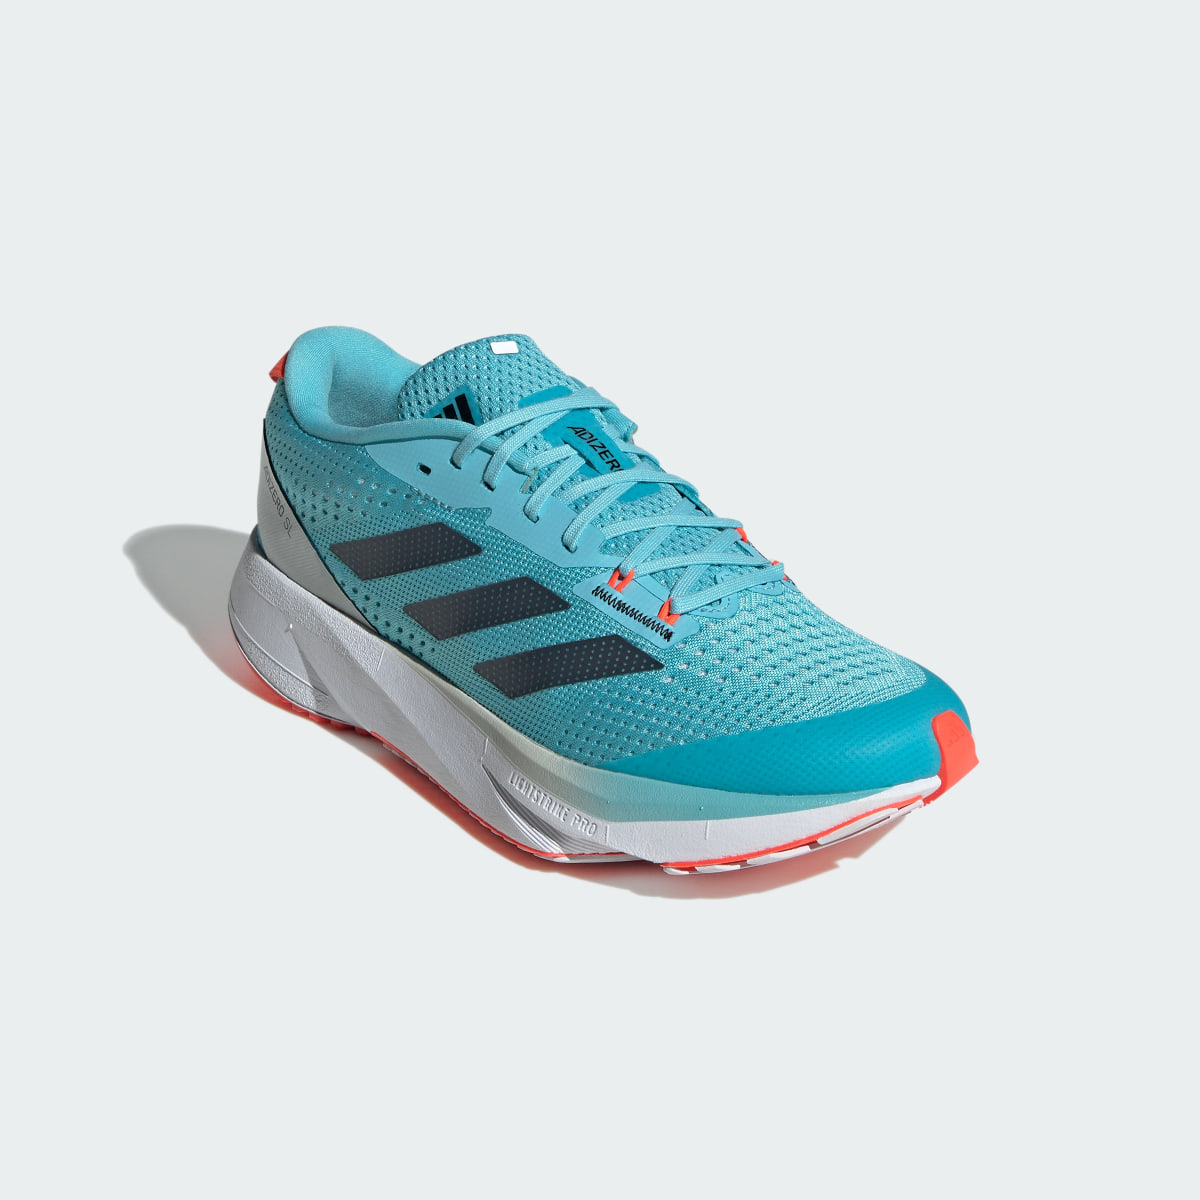 Adidas Adizero SL Running Shoes. 9